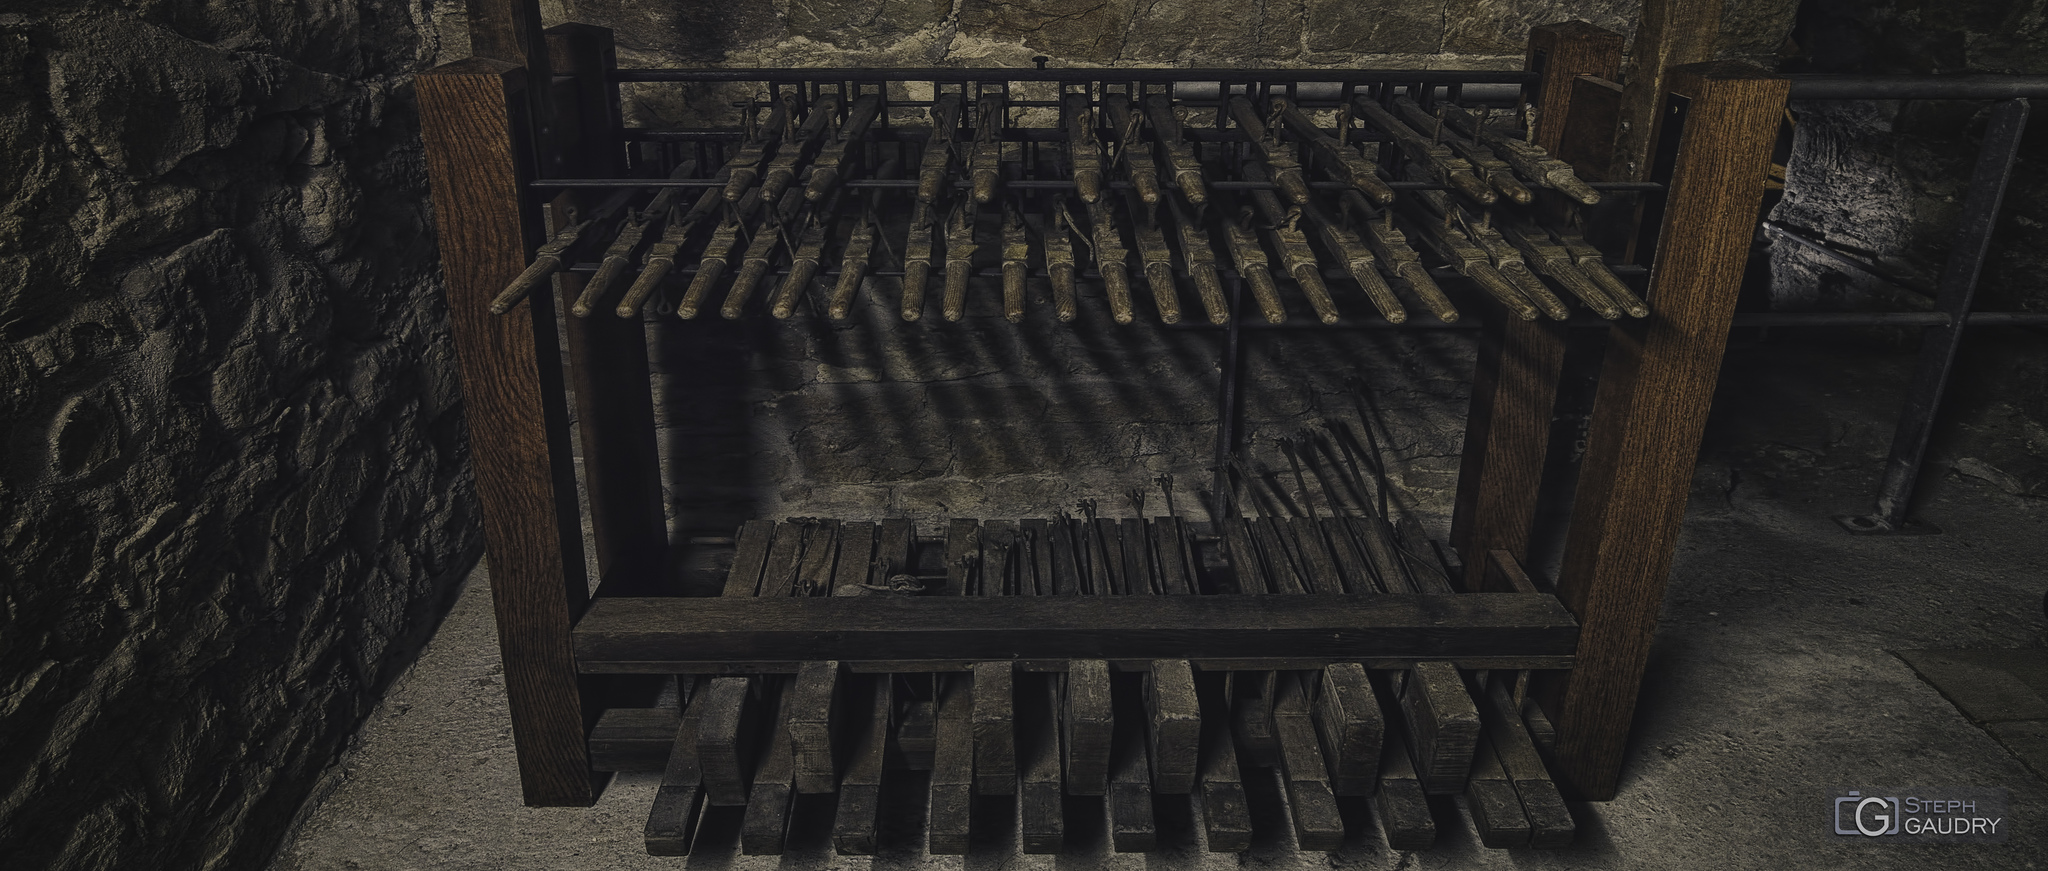 Clavier du carillon de la collégiale Saint-Barthélemy